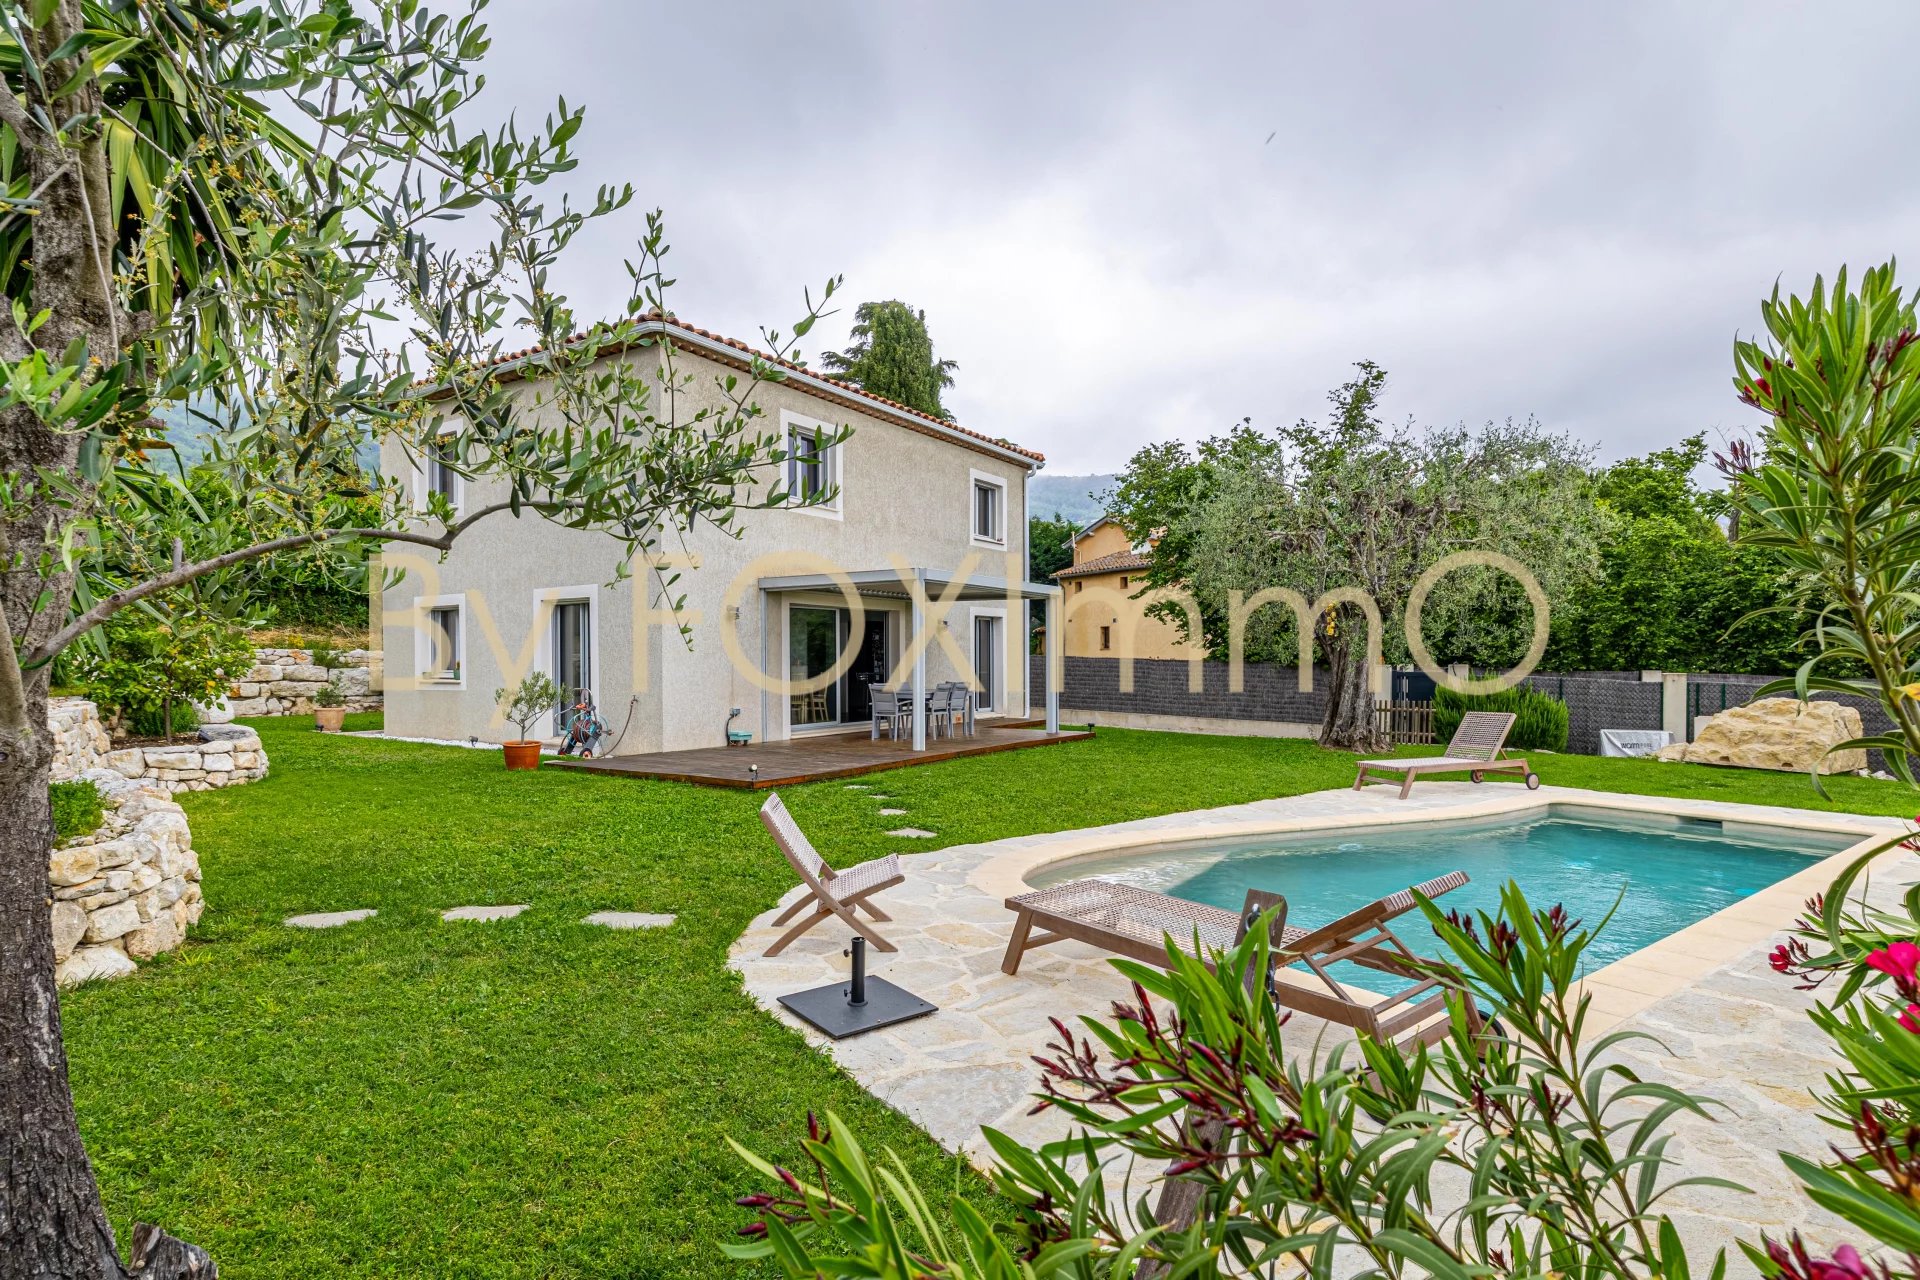 Villa récente 125 m² 5 pièces avec piscine et jardin et garage. Au calme absolu